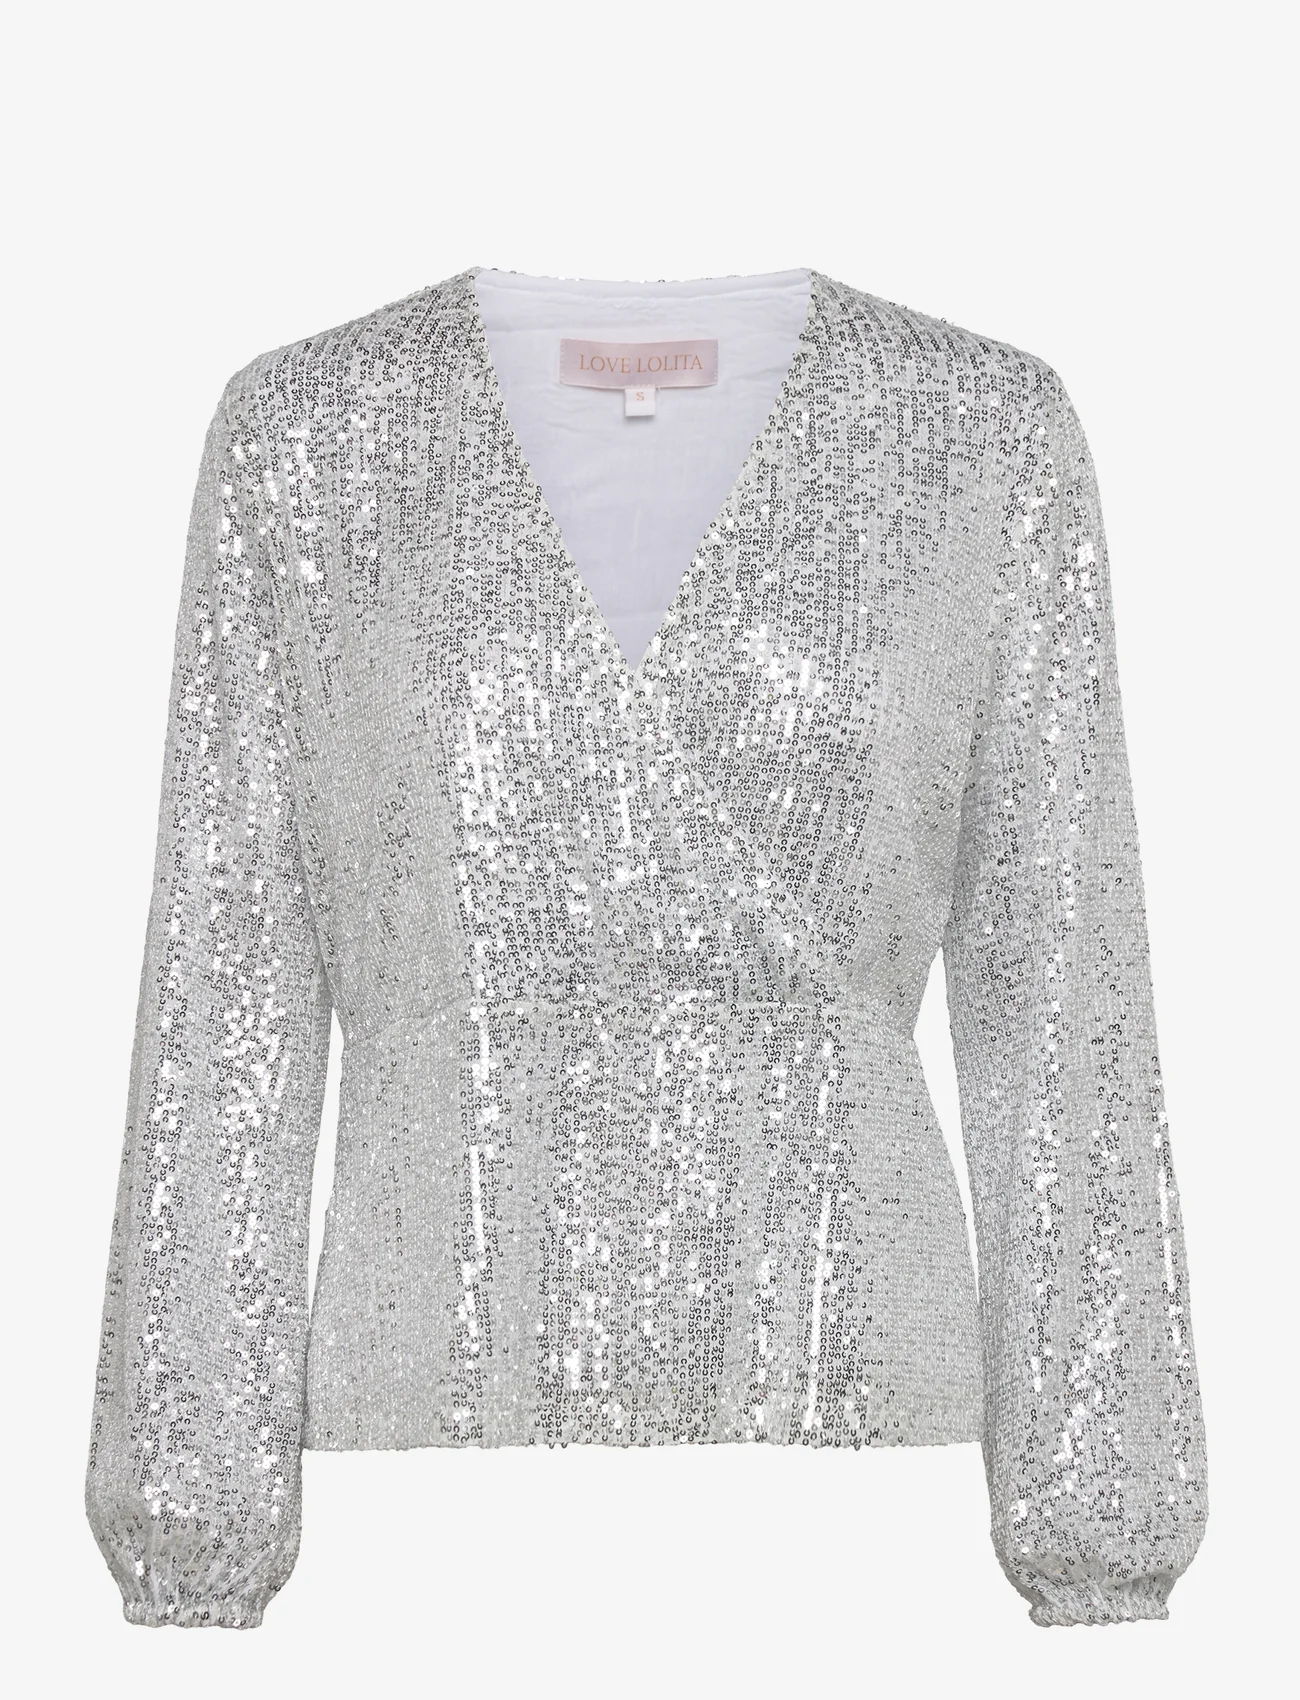 Love Lolita - Adeline blouse - langärmlige blusen - silver sequins - 0